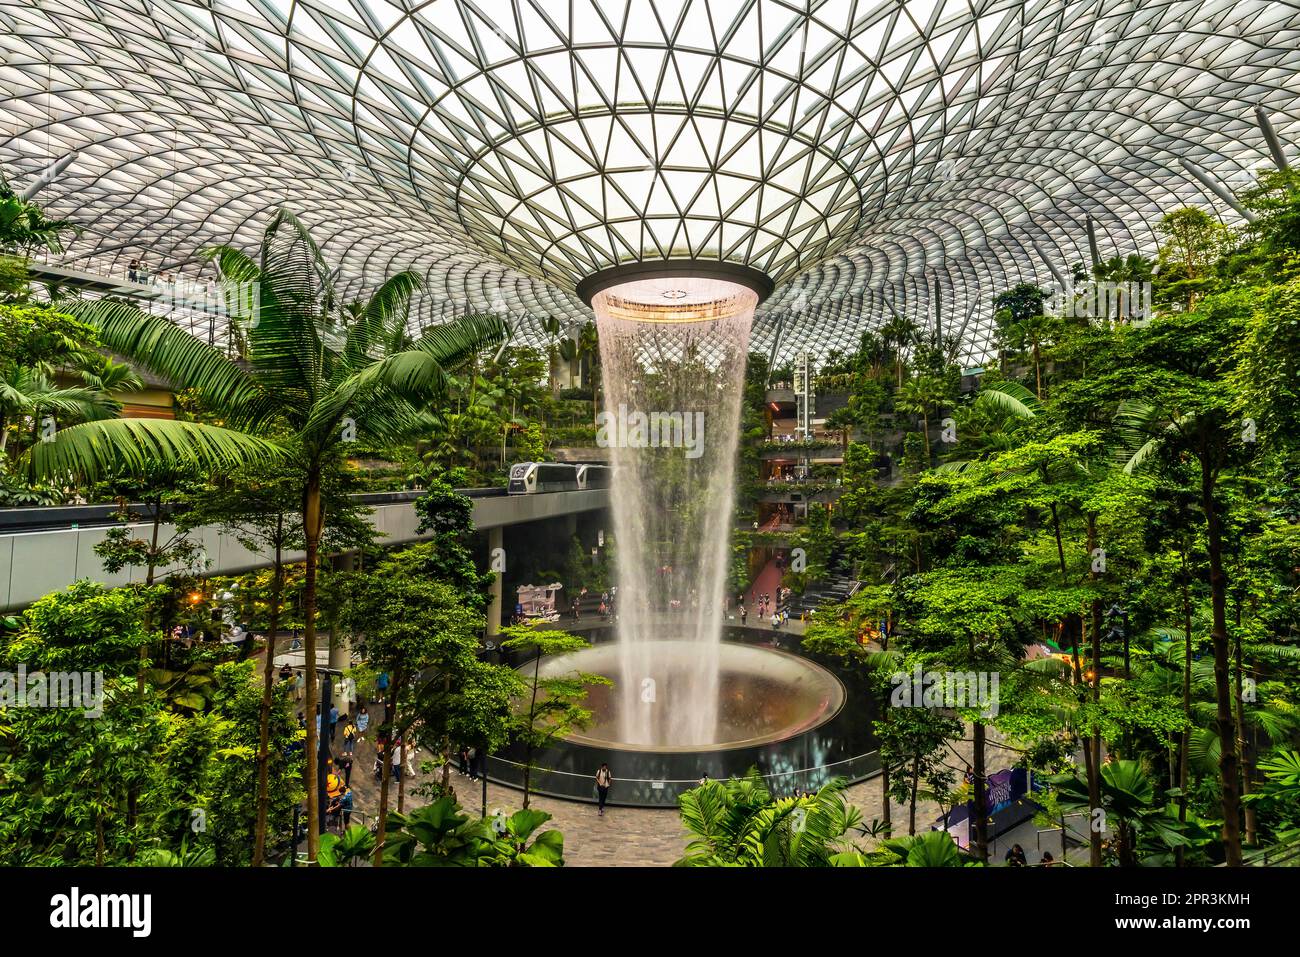 Singapore. Gioiello, cascata e foresta interna all'Aeroporto Changi di Singapore. Singapore Changi è stato incoronato il miglior aeroporto del mondo. Foto Stock